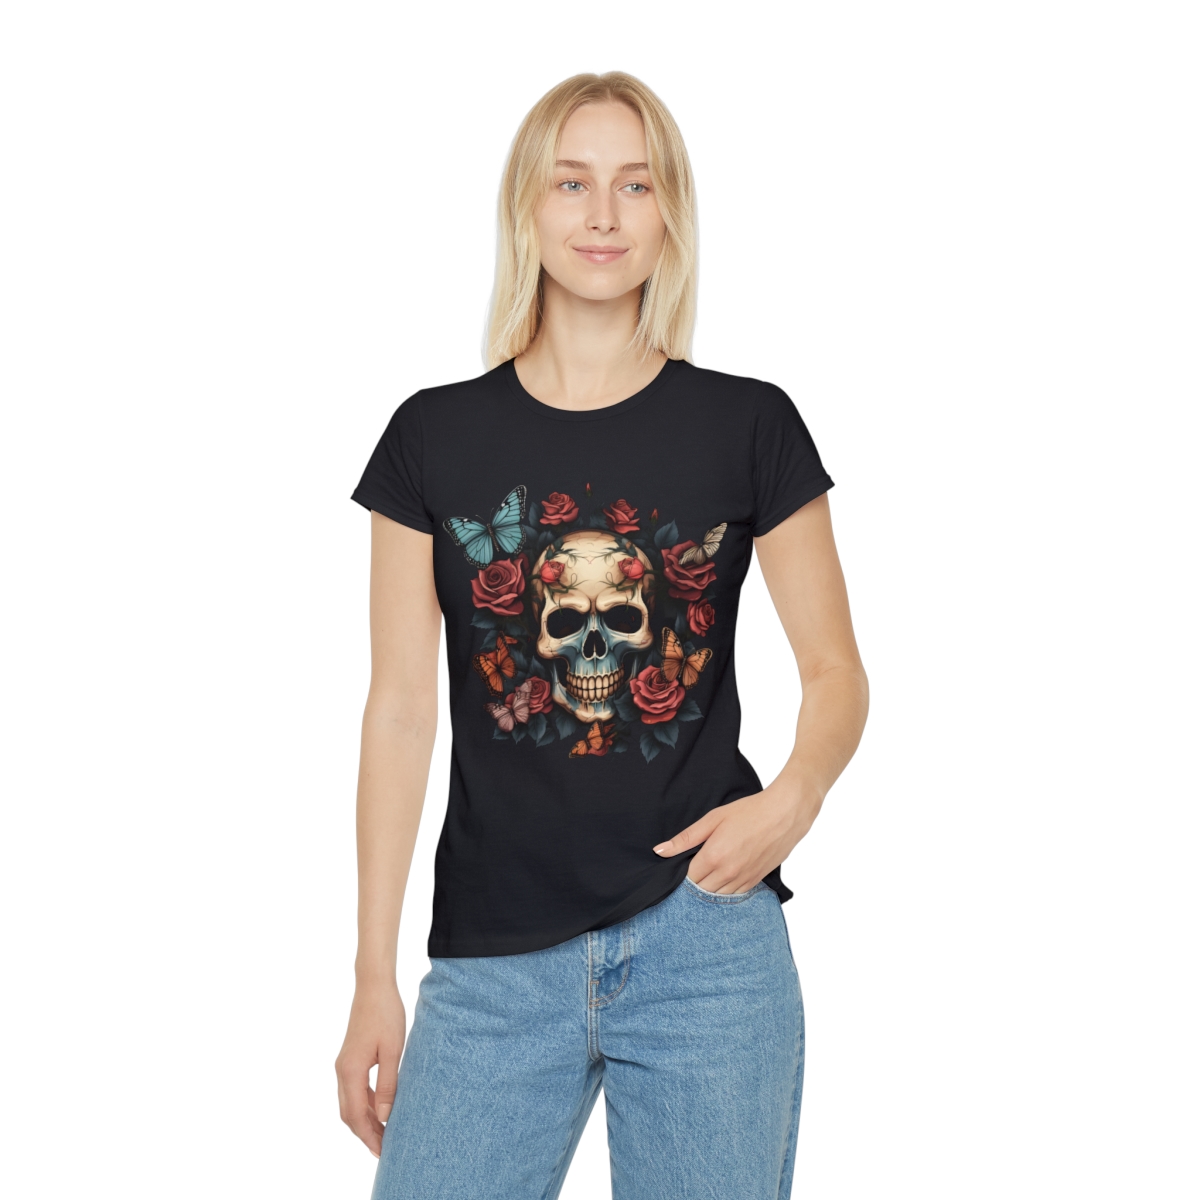 Black Skull'n'Roses Women's T-Shirt for girls with rock spirit Dulys Design